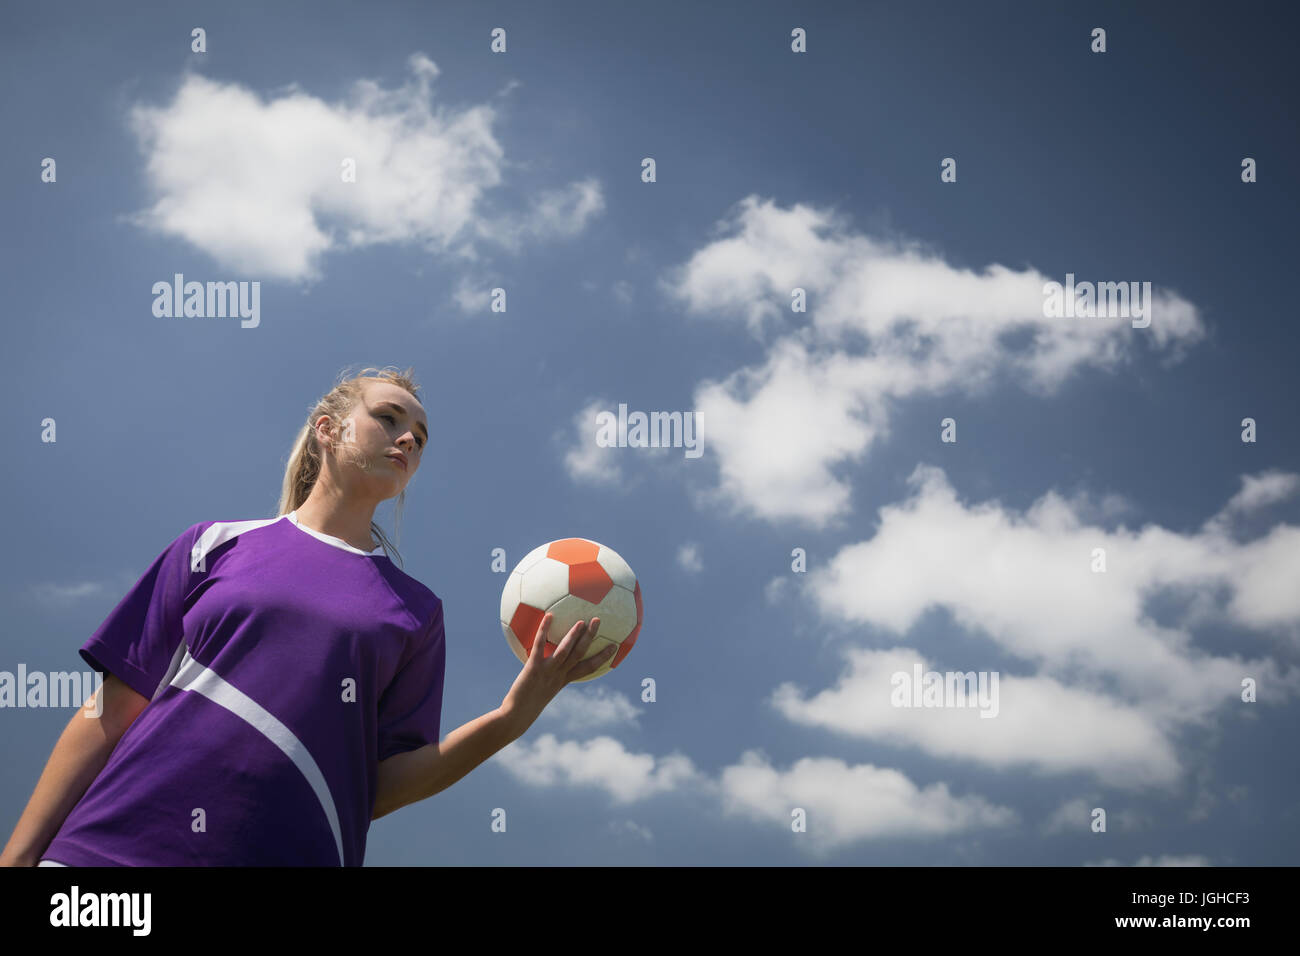 Vue faible angle de jeune femme tenant le ballon de soccer dans le ciel Banque D'Images